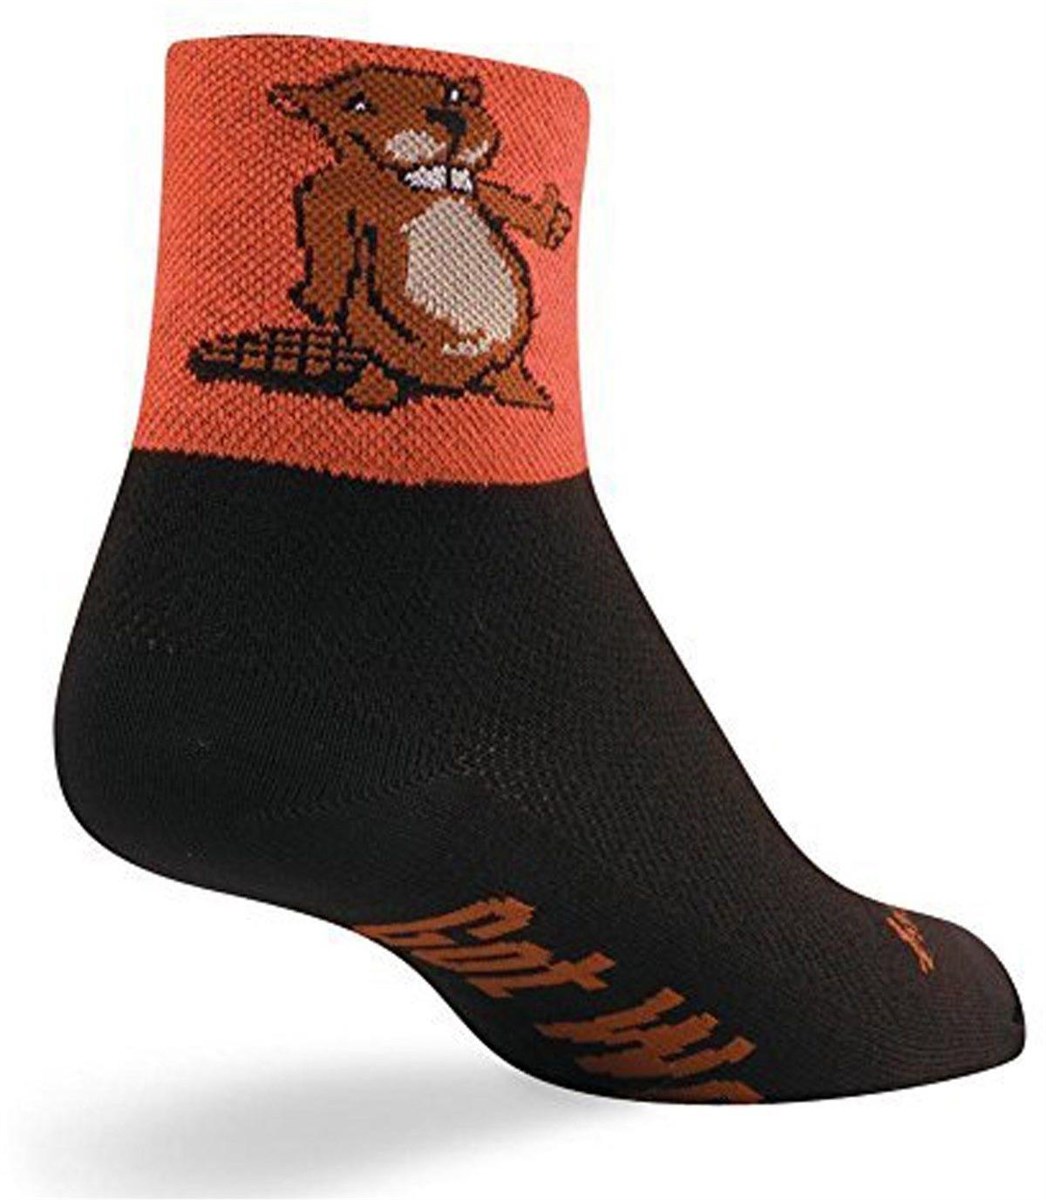 SockGuy Beaver 2 Socks